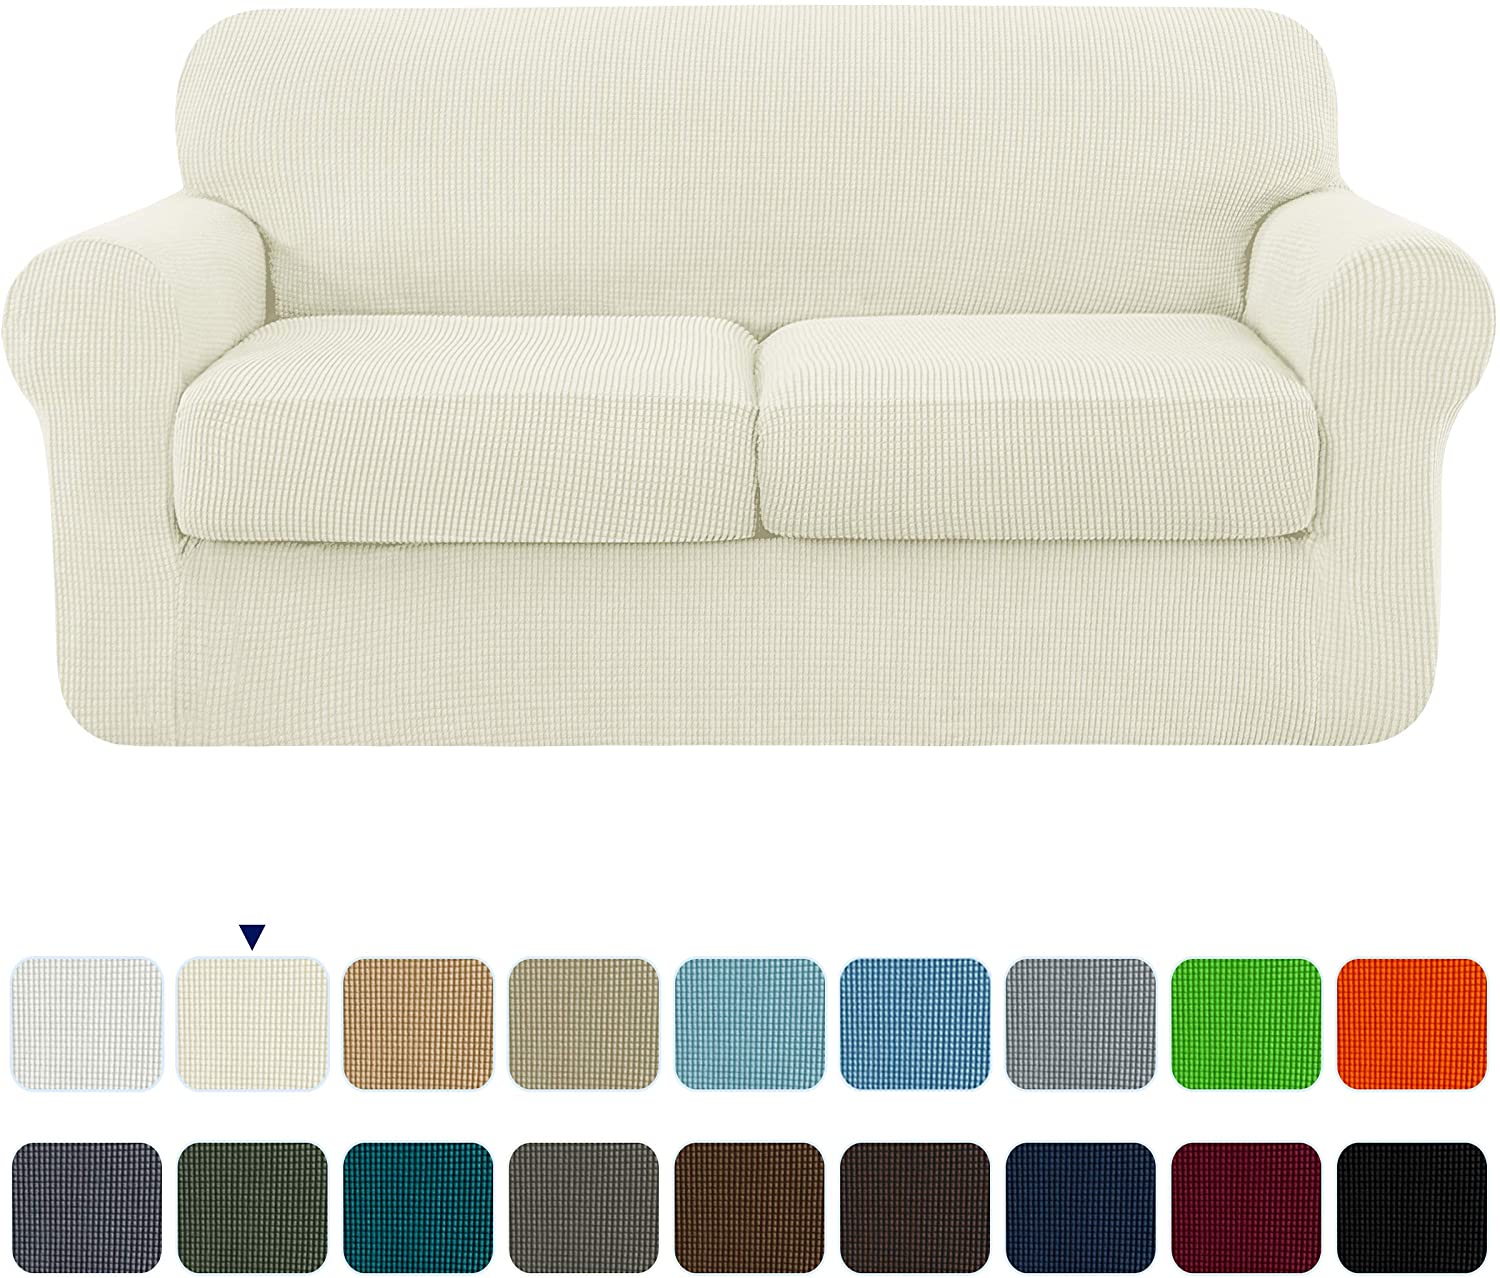 Subrtex Funda de sofá con 2 fundas de asiento separadas elástica funda de sofá 2 plazas funda elástica para sofá color crema 